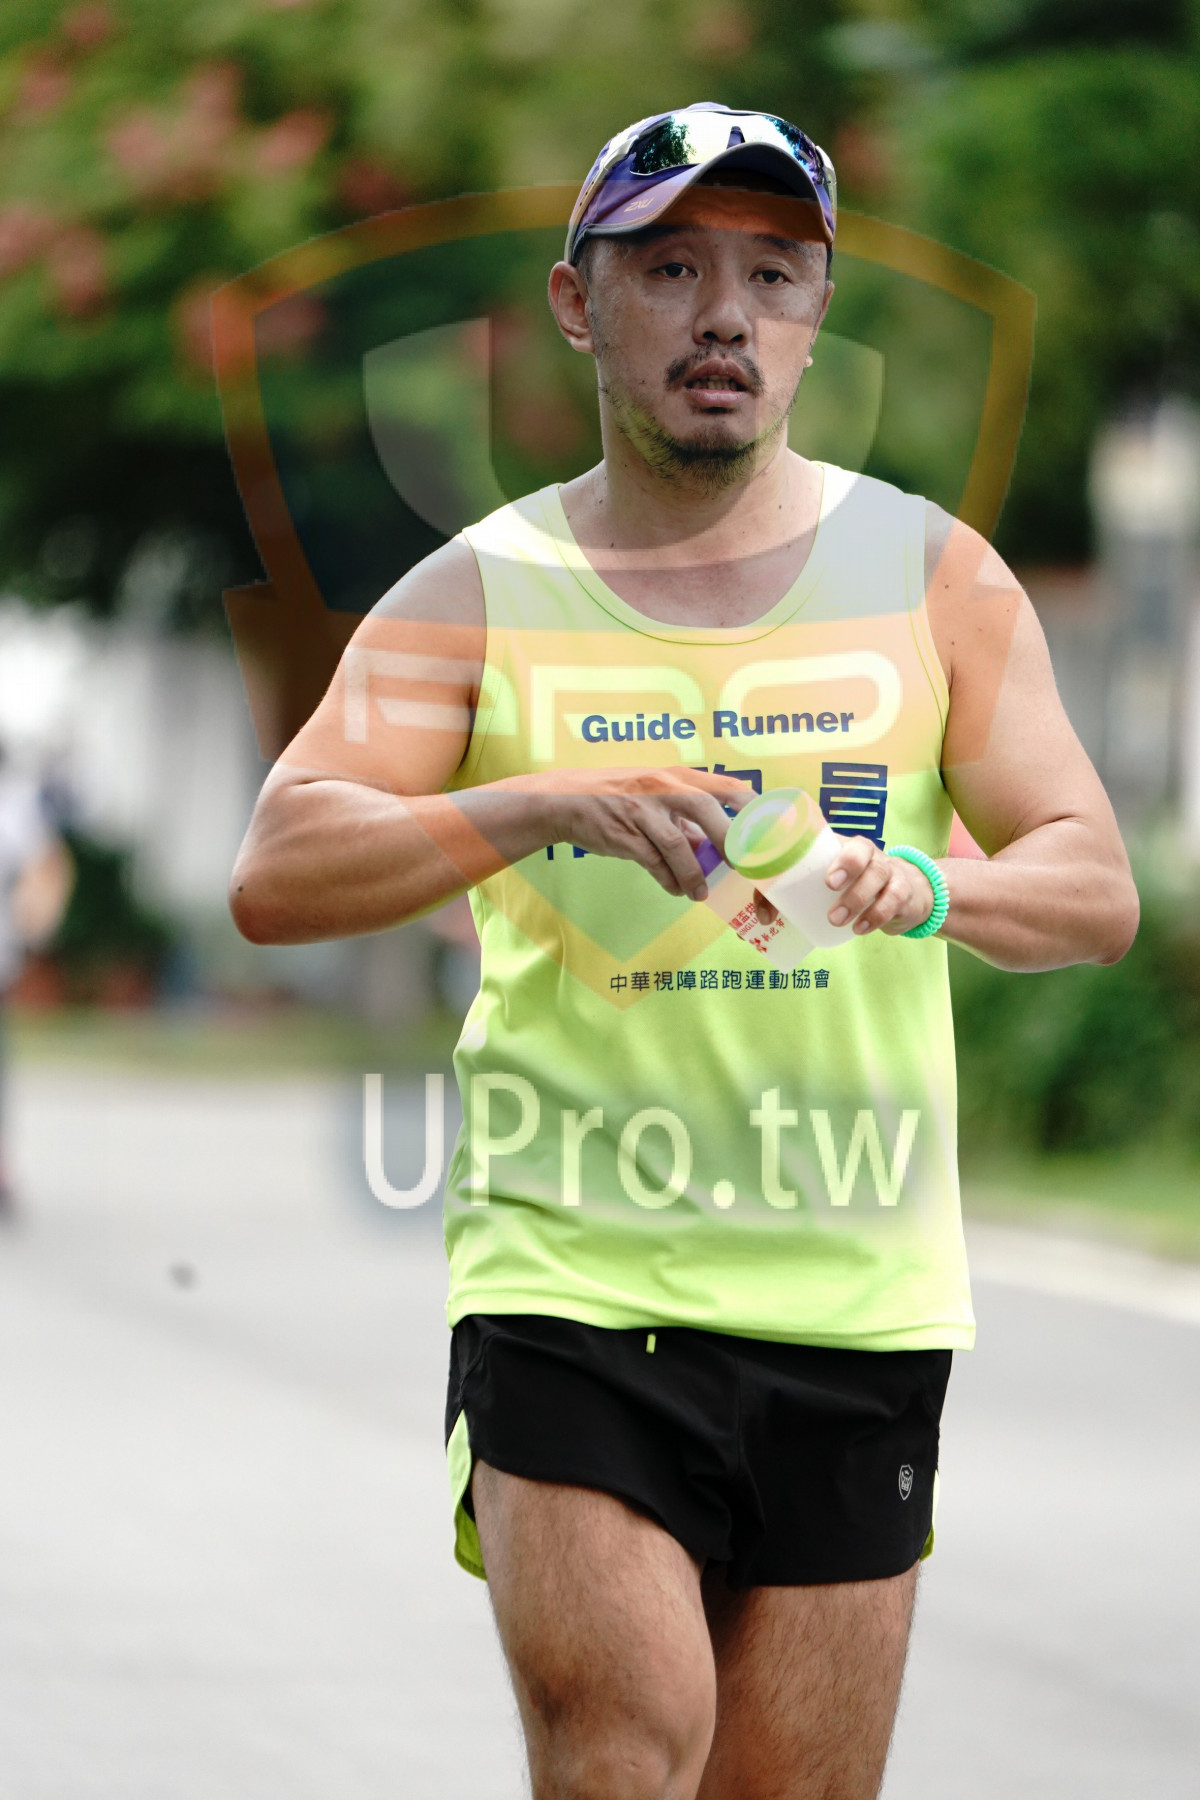 Guide Runner,|